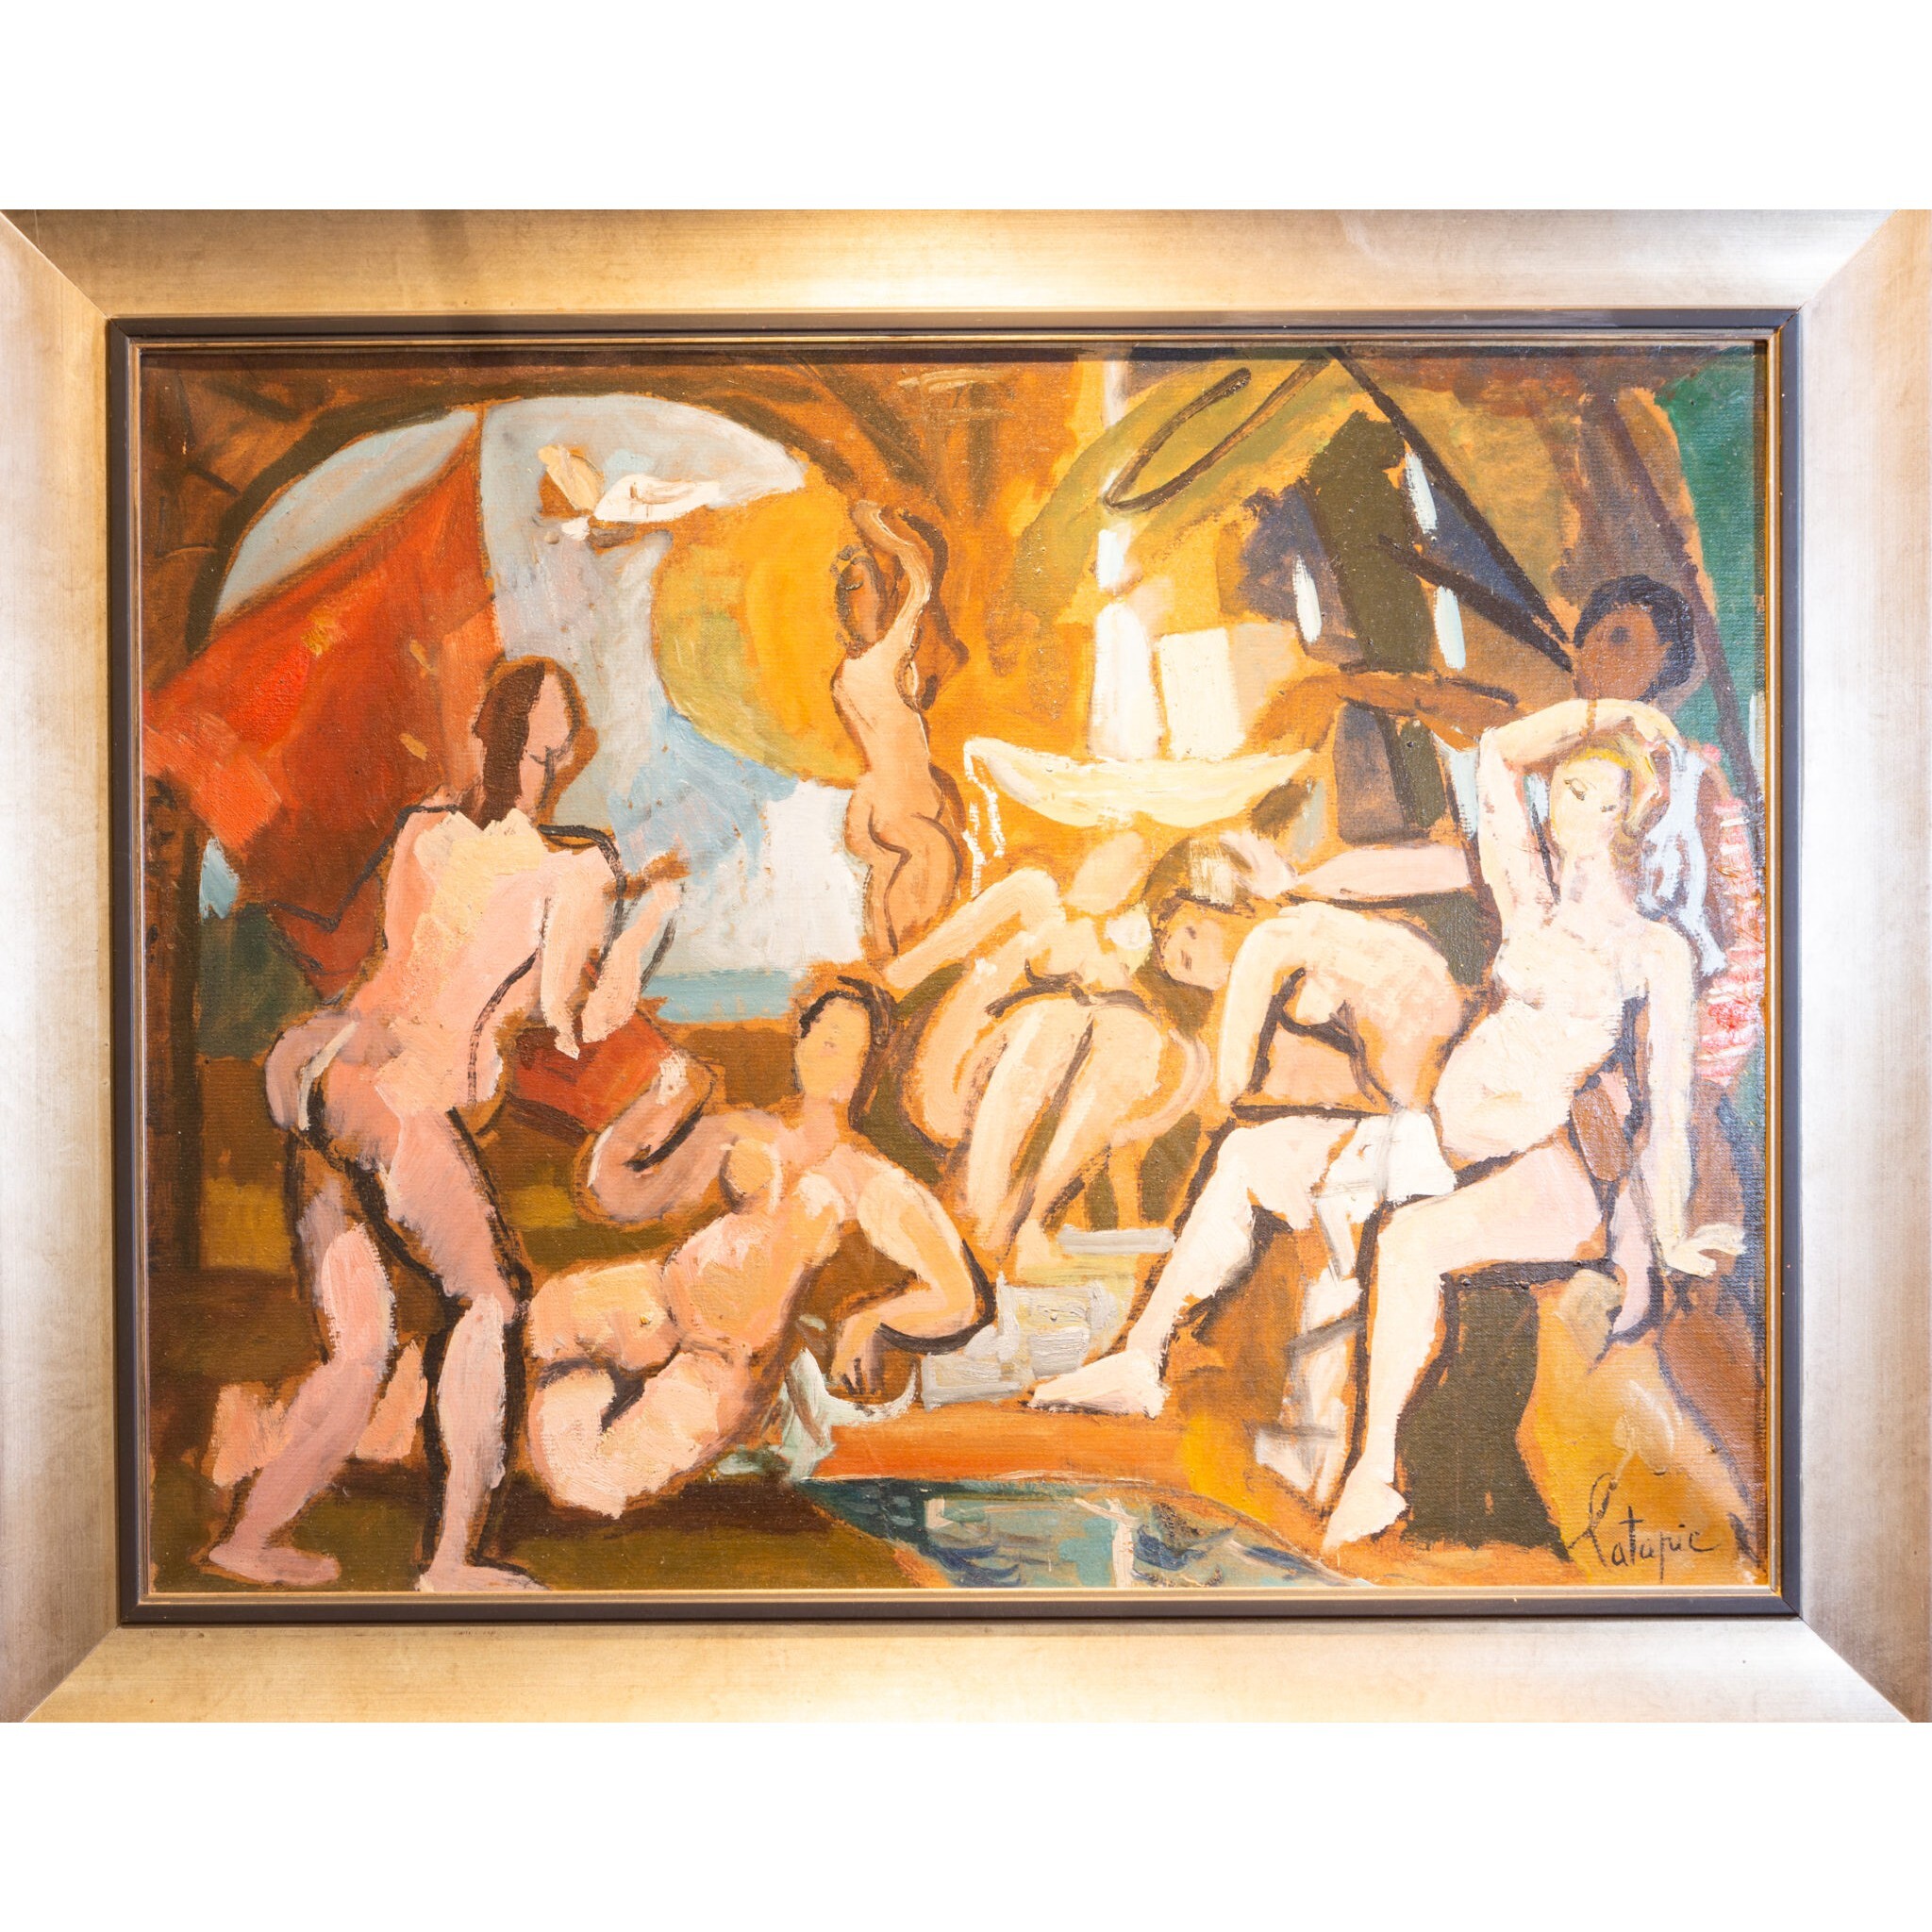 Femmes nues, huile sur toile signée Louis Latapie